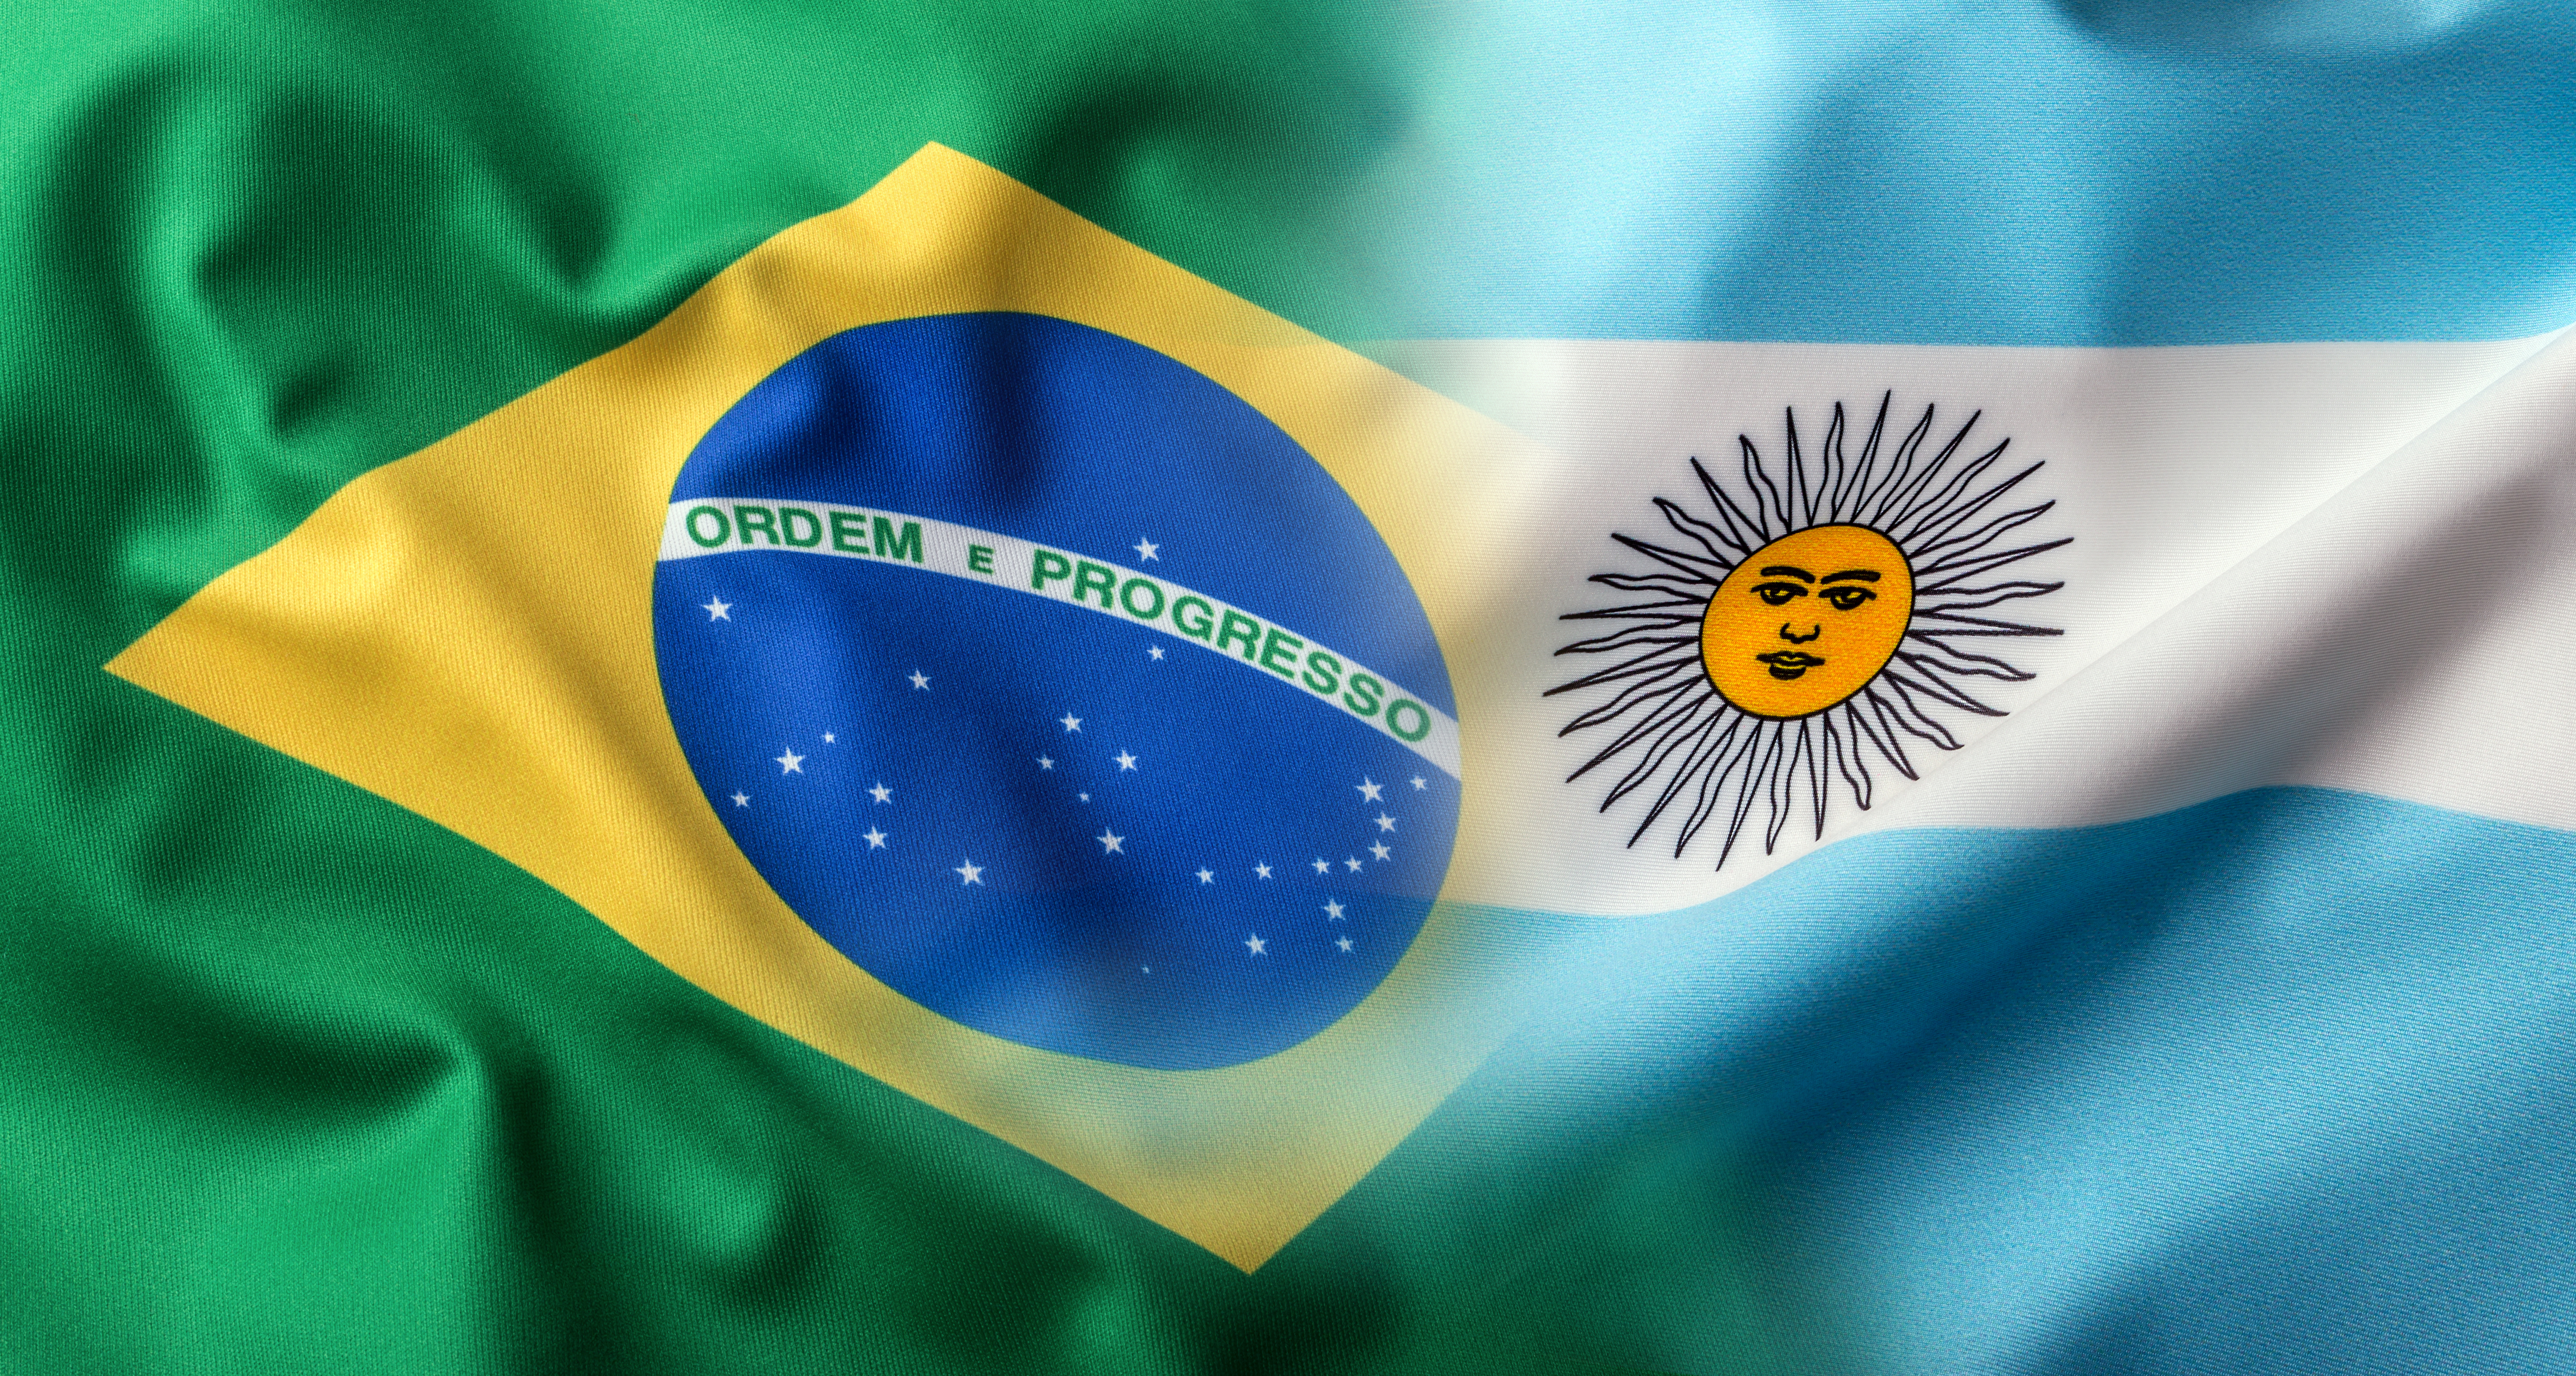 Бразилия и Аргентина хотят перейти на новую общую валюту, пользователи биткоина предлагают принять BTC